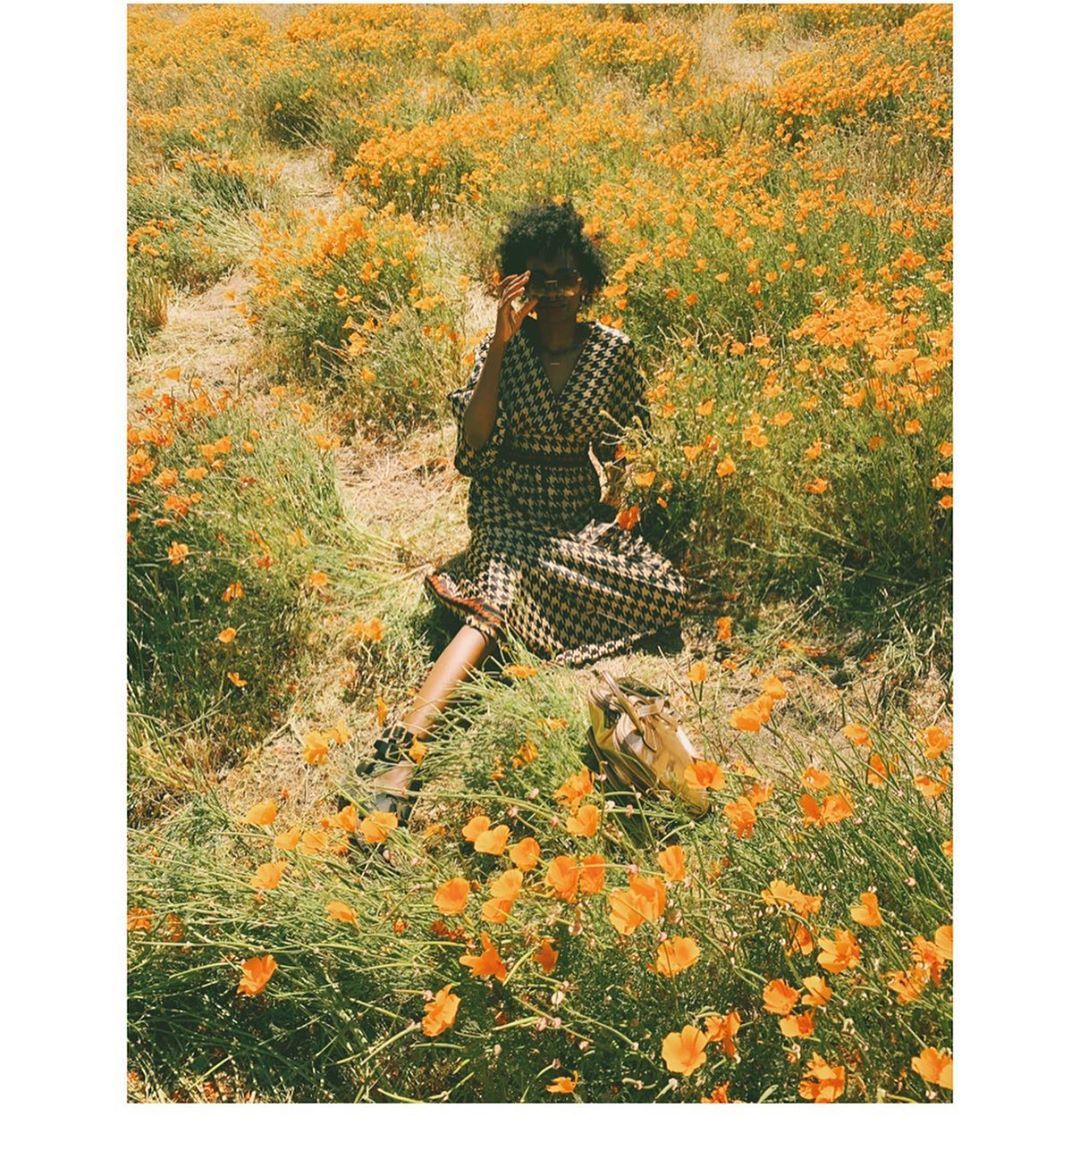 • nature feels 🧚🏿 •
📷: @lipayfiasco
.
.
.
#poppyfields #antelopevalley (at Antelope Valley Poppy Fields)
https://www.instagram.com/p/CABU3YHgaUR/?igshid=1hv4sku3kh4qx